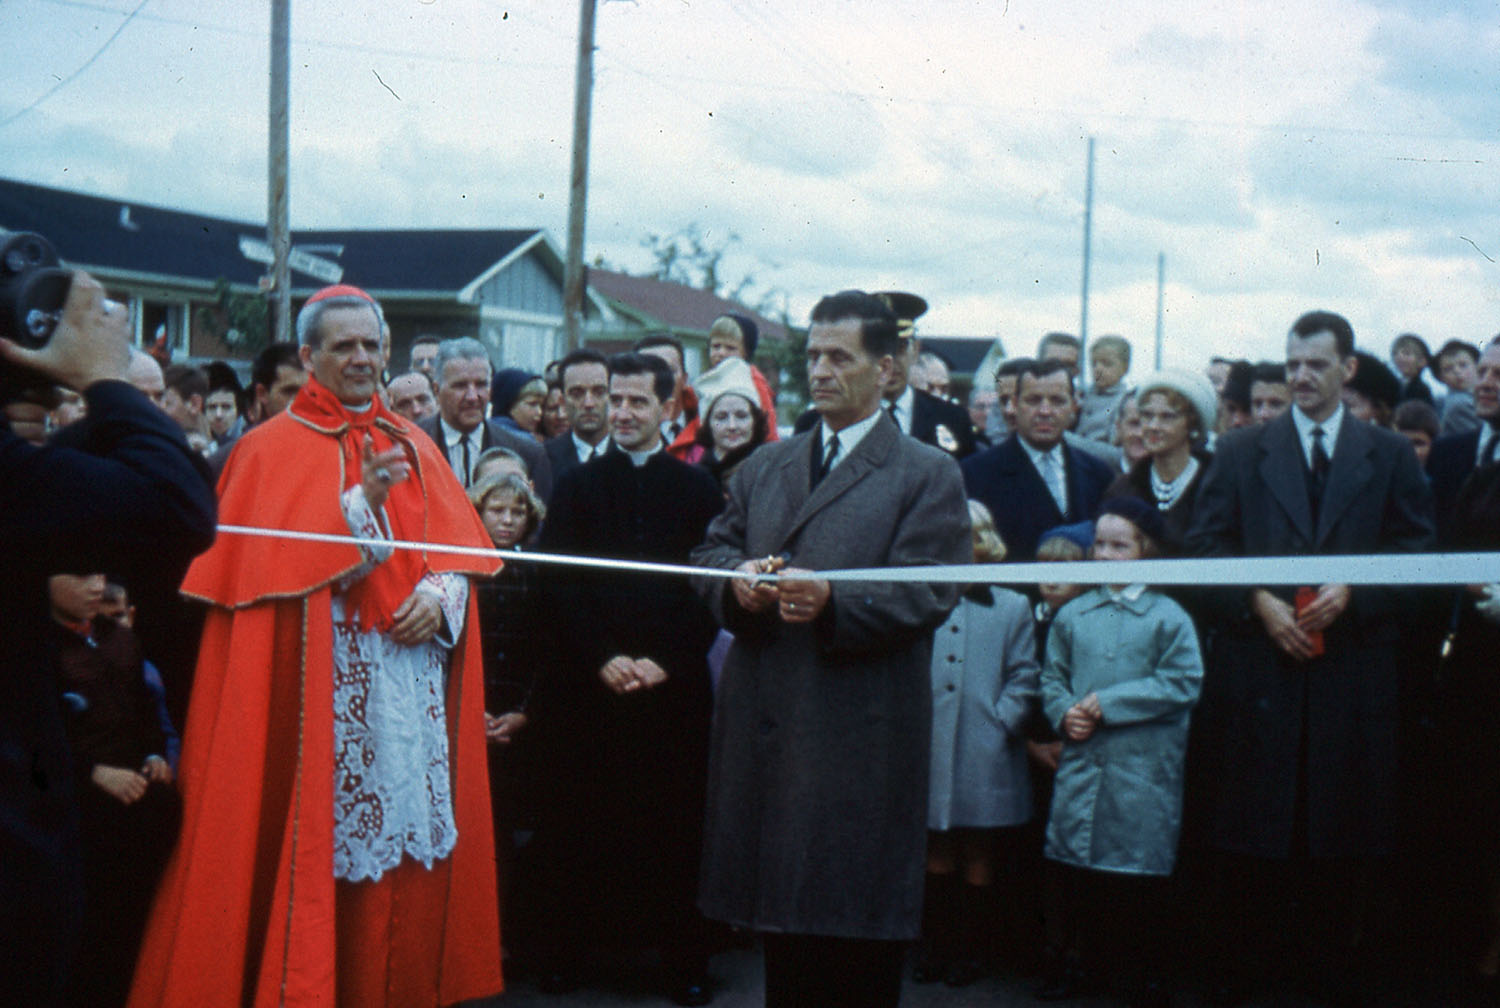 Un homme, avec le cardinal Léger à ses côtés et une foule d’hommes, de femmes et d’enfants derrière lui, s’apprête à couper un ruban pour inaugurer un boulevard.